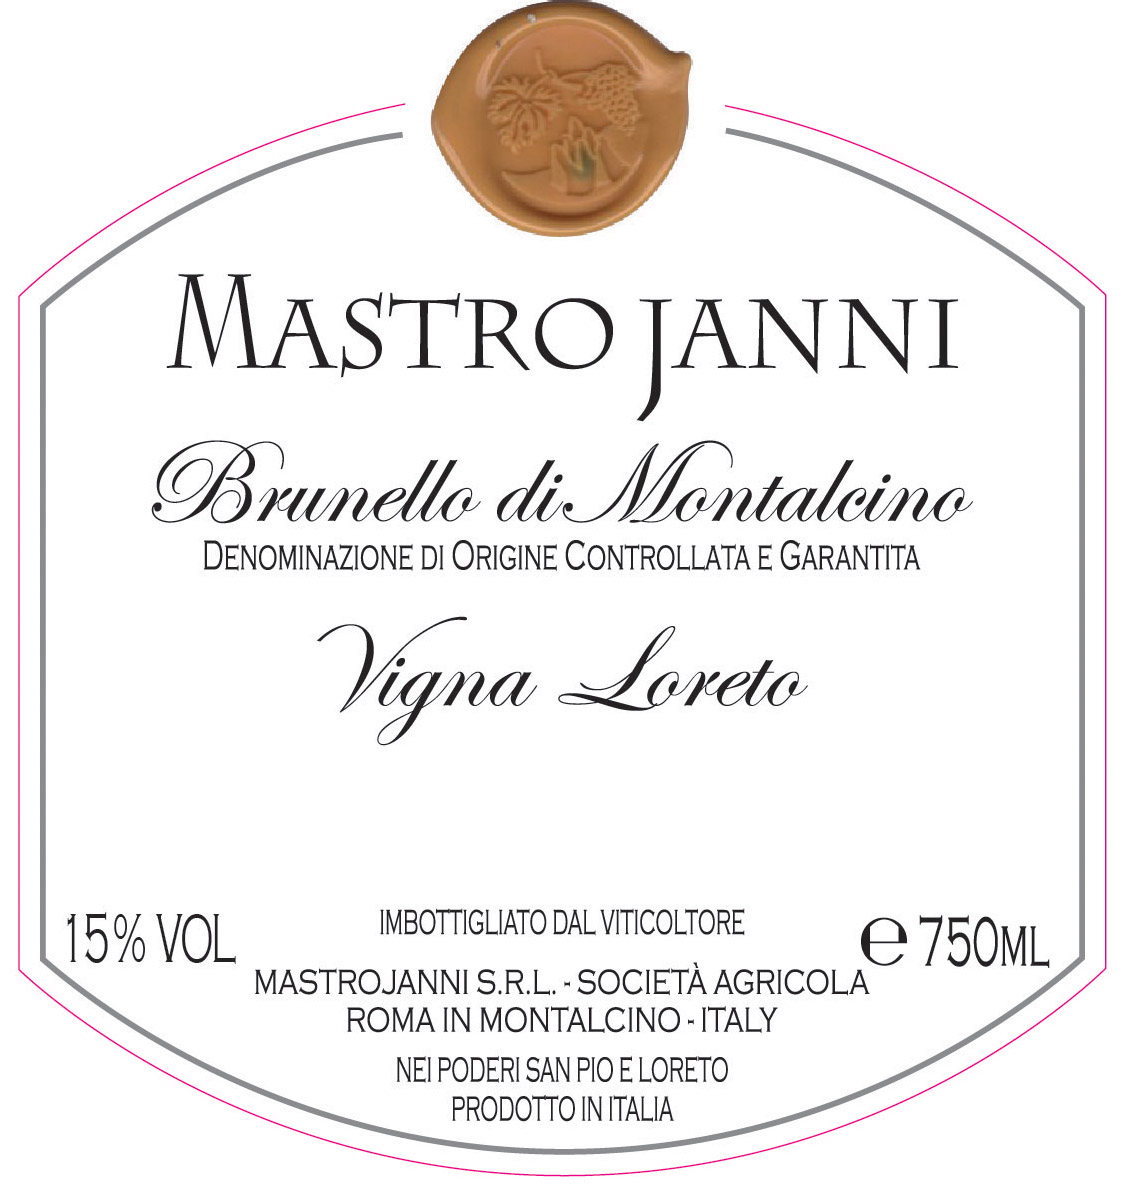 MastroJanni - Brunello di Montalcino - Vigna Loreto label